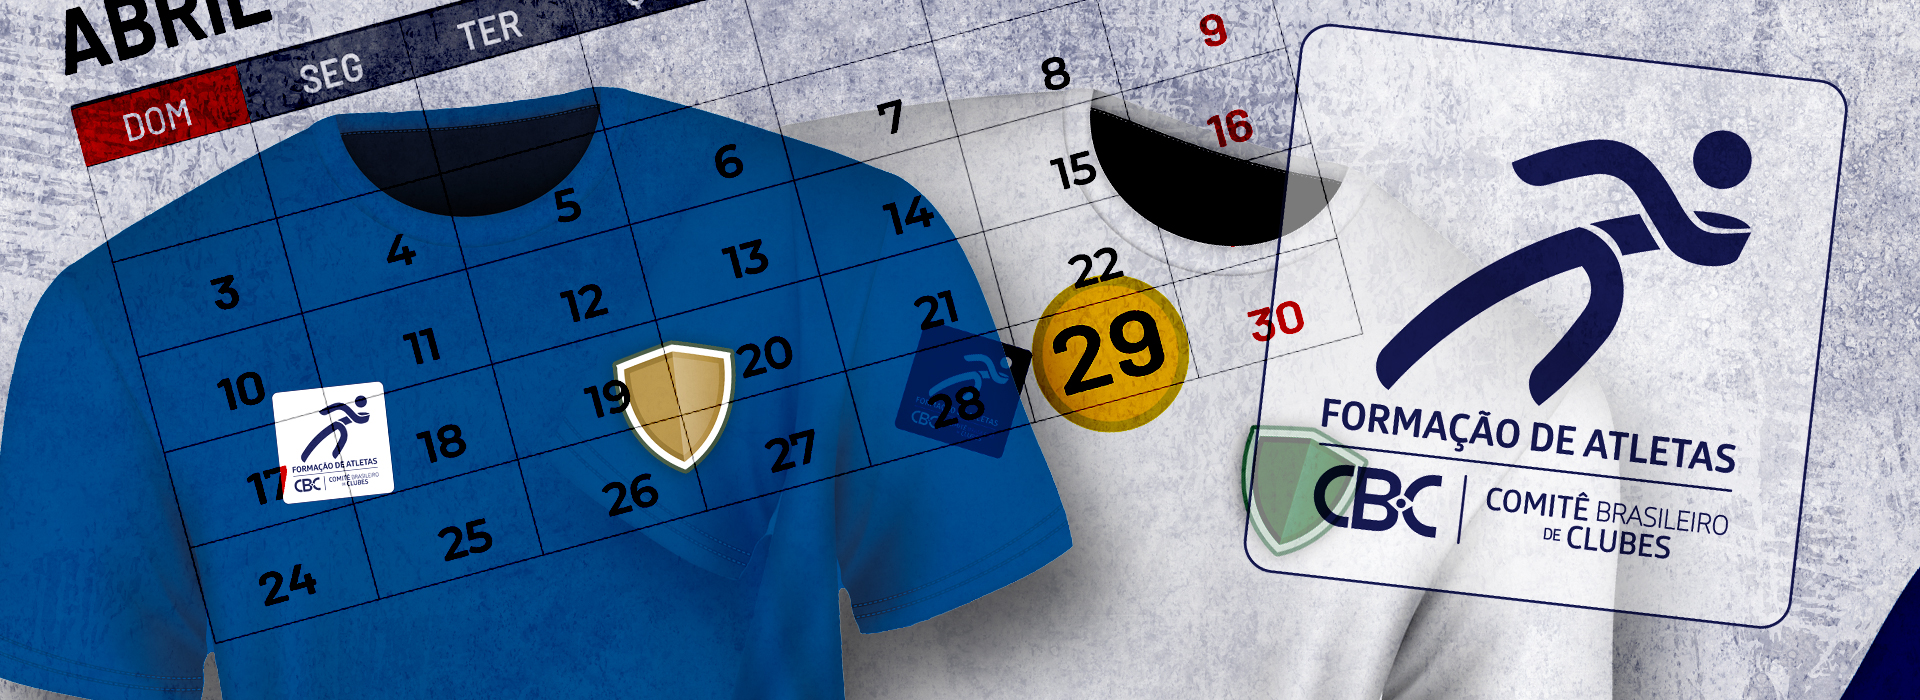 Clubes tem até dia 29 de abril para apresentação de layouts de uniformes com Selo de Formação de Atletas versão 2022